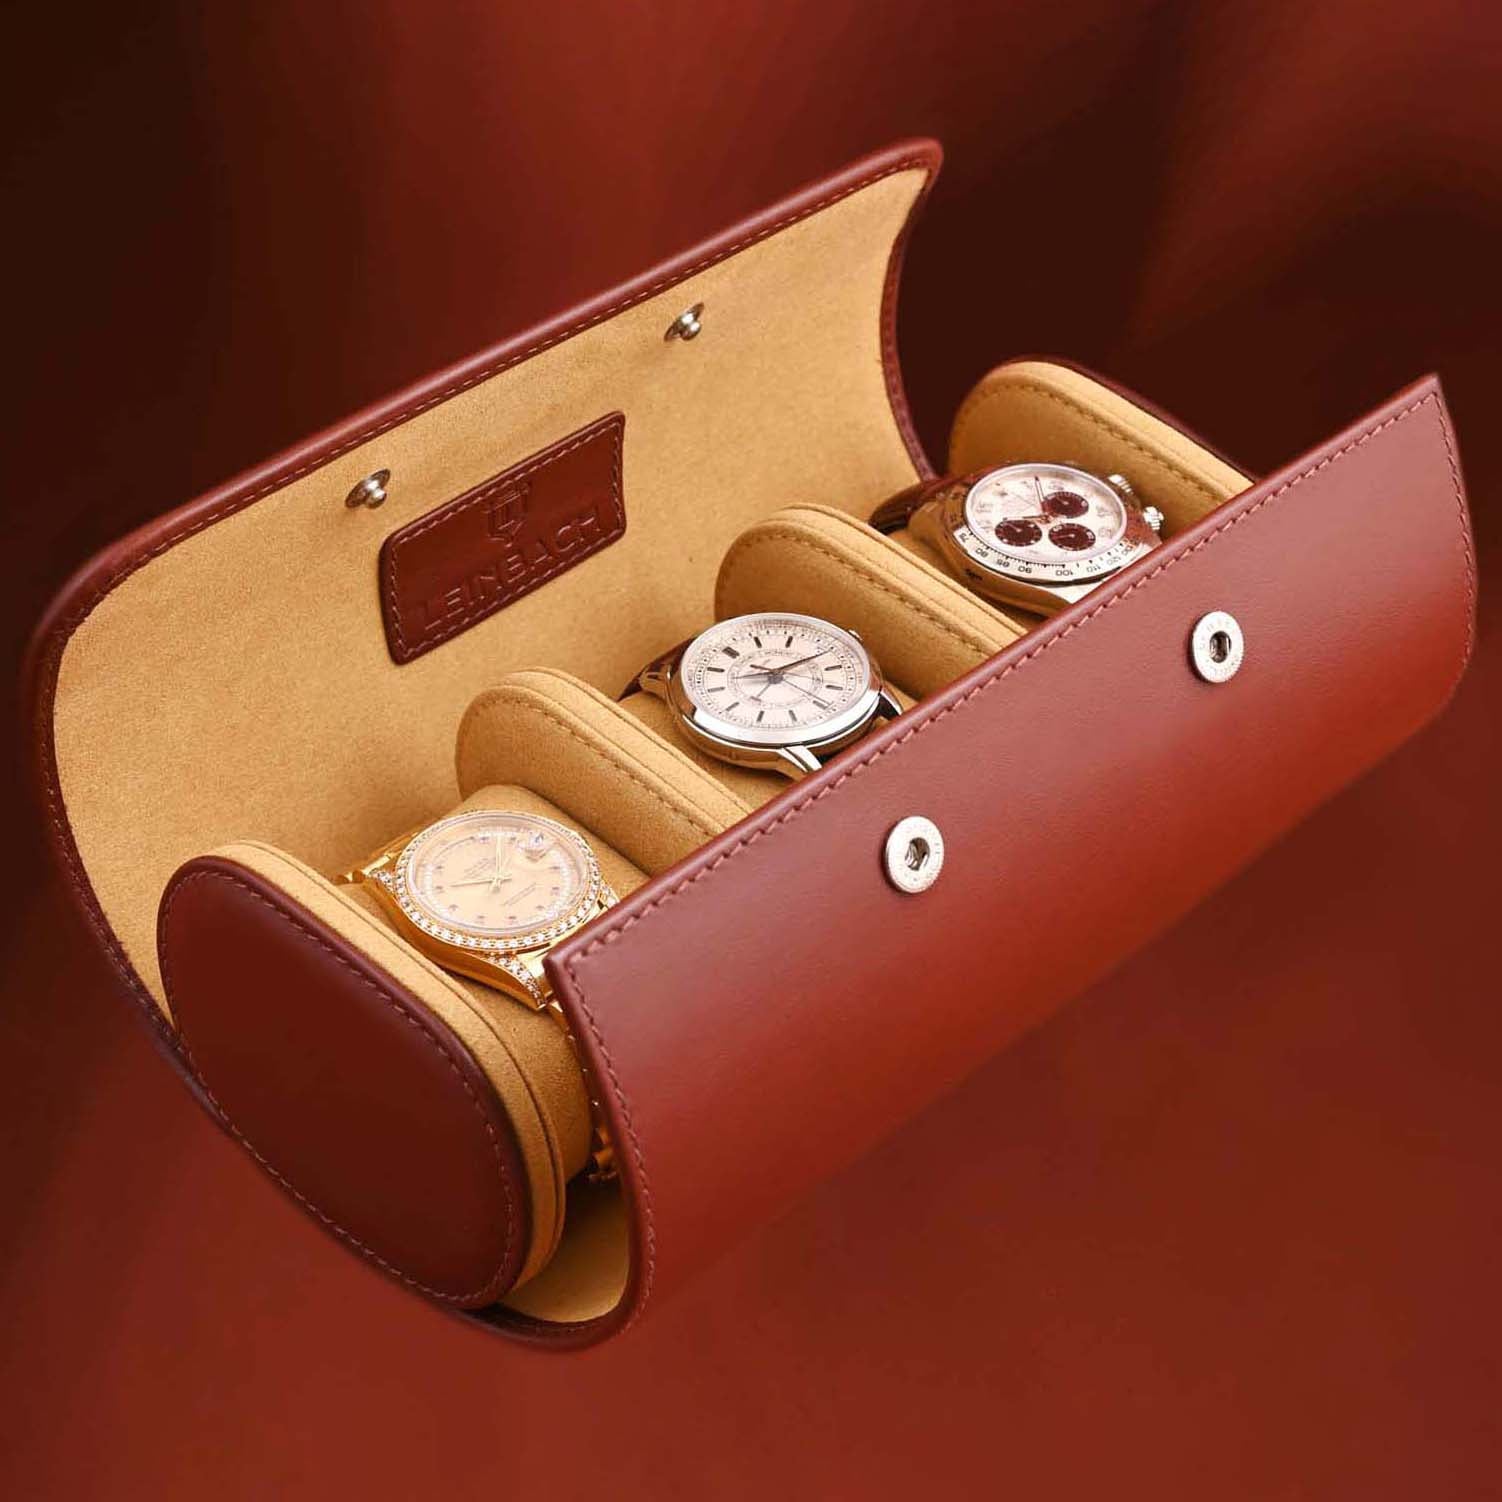 Louis Vuitton Uhrenrolle für drei Uhren